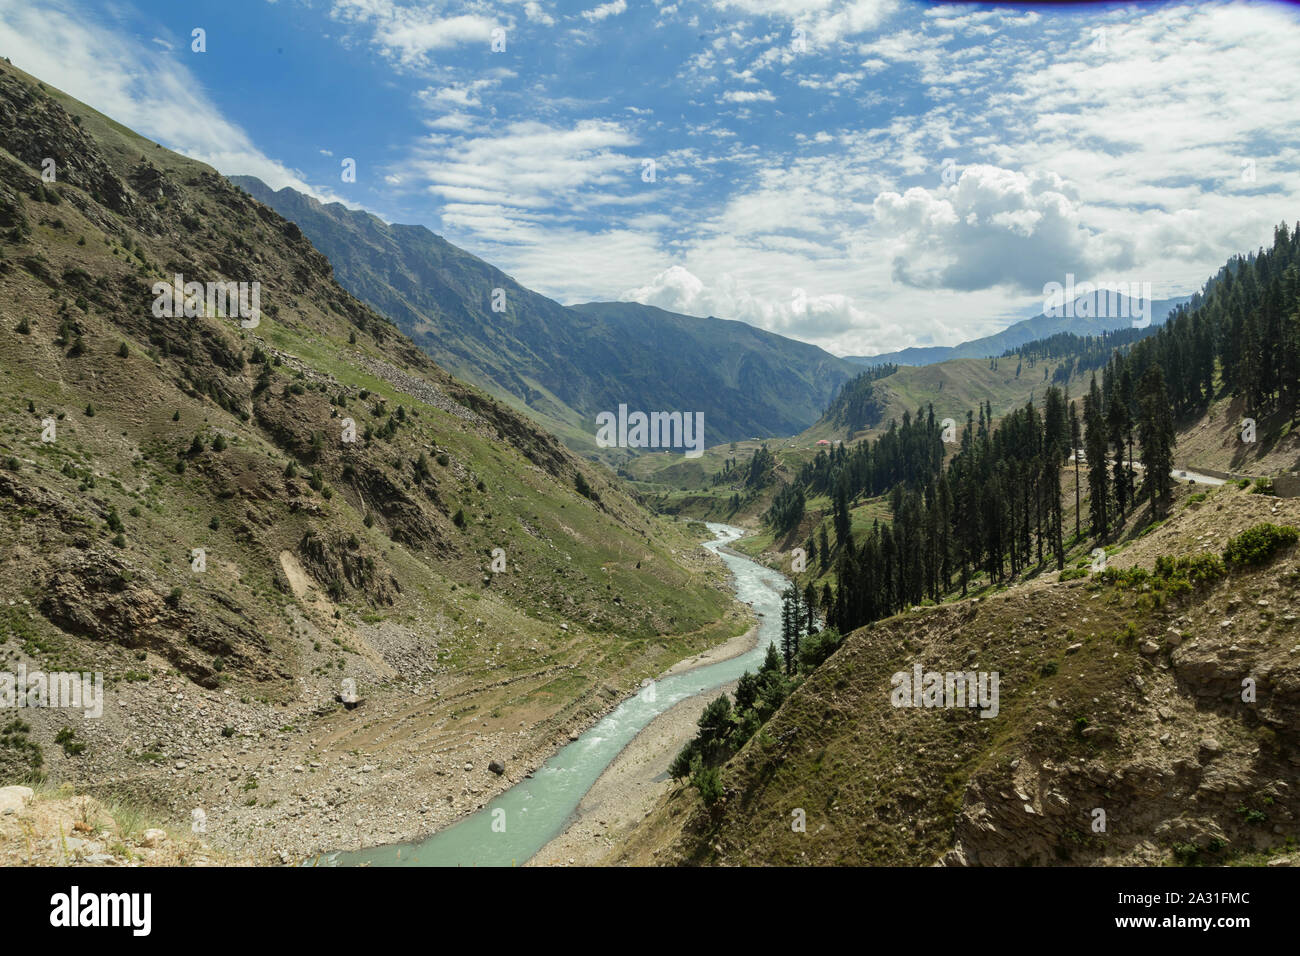 Kaghan Valley est une vallée alpine dans le district de Mansehra de la province de Khyber Pakhtunkhwa au Pakistan, attirant des touristes de tout le Pakistan. Banque D'Images